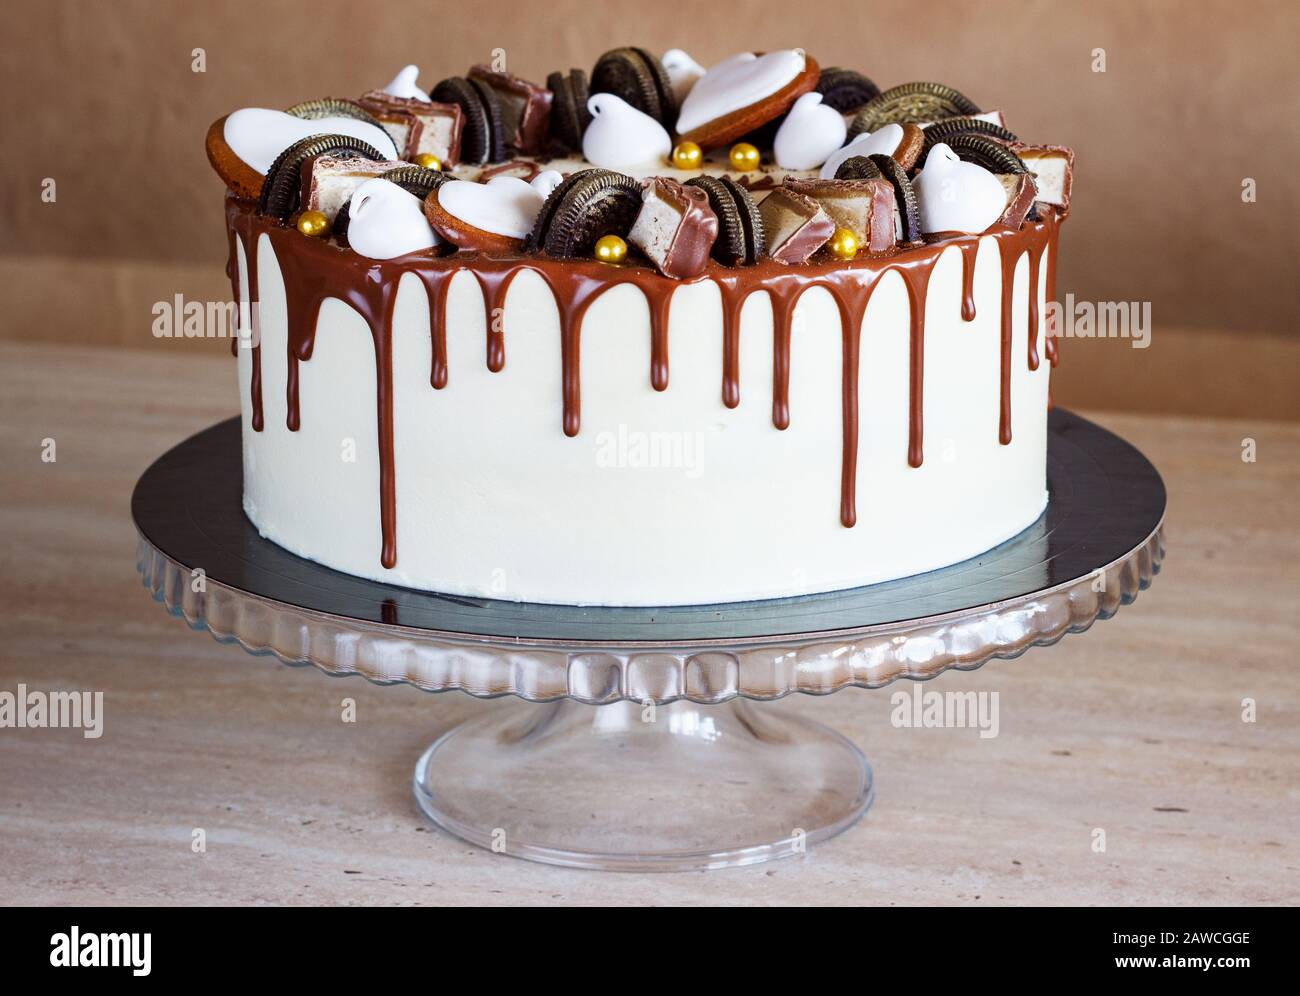 Männlich, Stylisch, Chocolate Cake mit Fudge Drizzled Icing Stockfoto